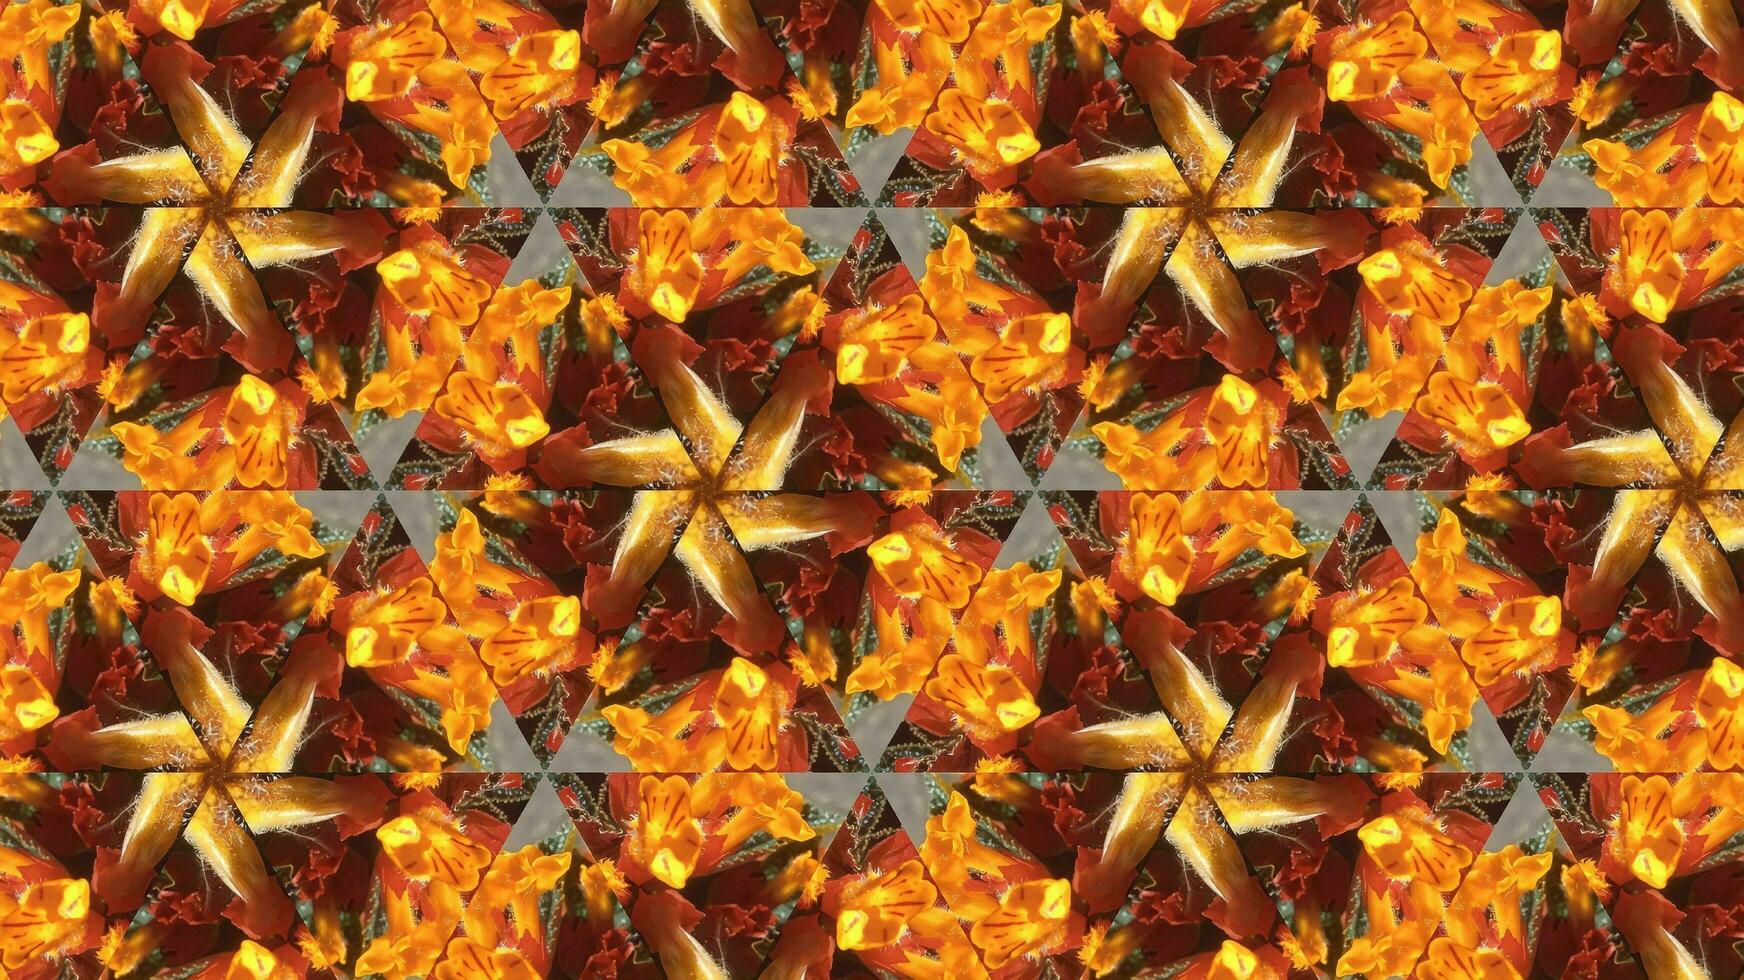 abstrakt färgrik sömlös mönster kalejdoskop foto